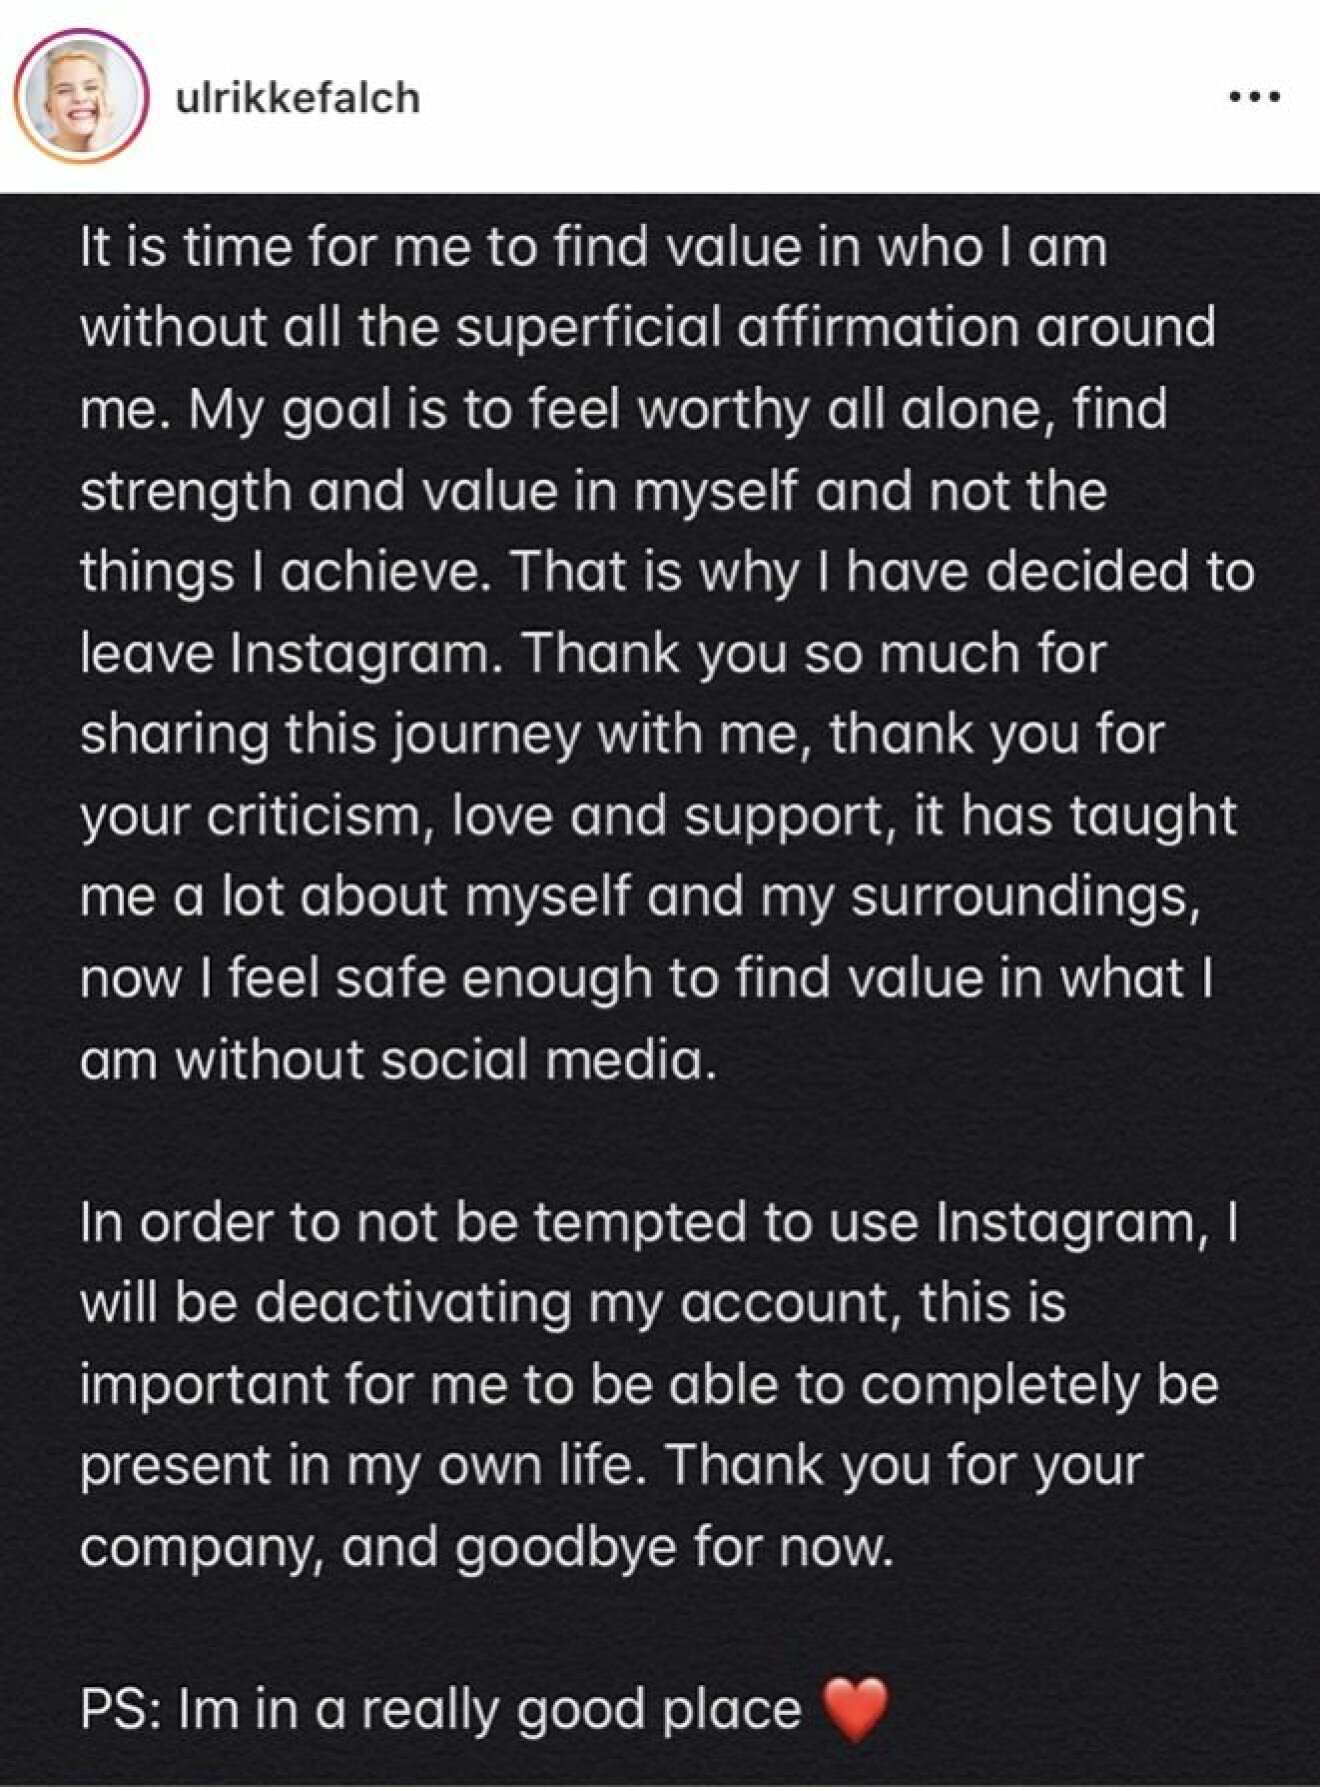 Ett inlägg på Instagram med vit text på svart bakgrund